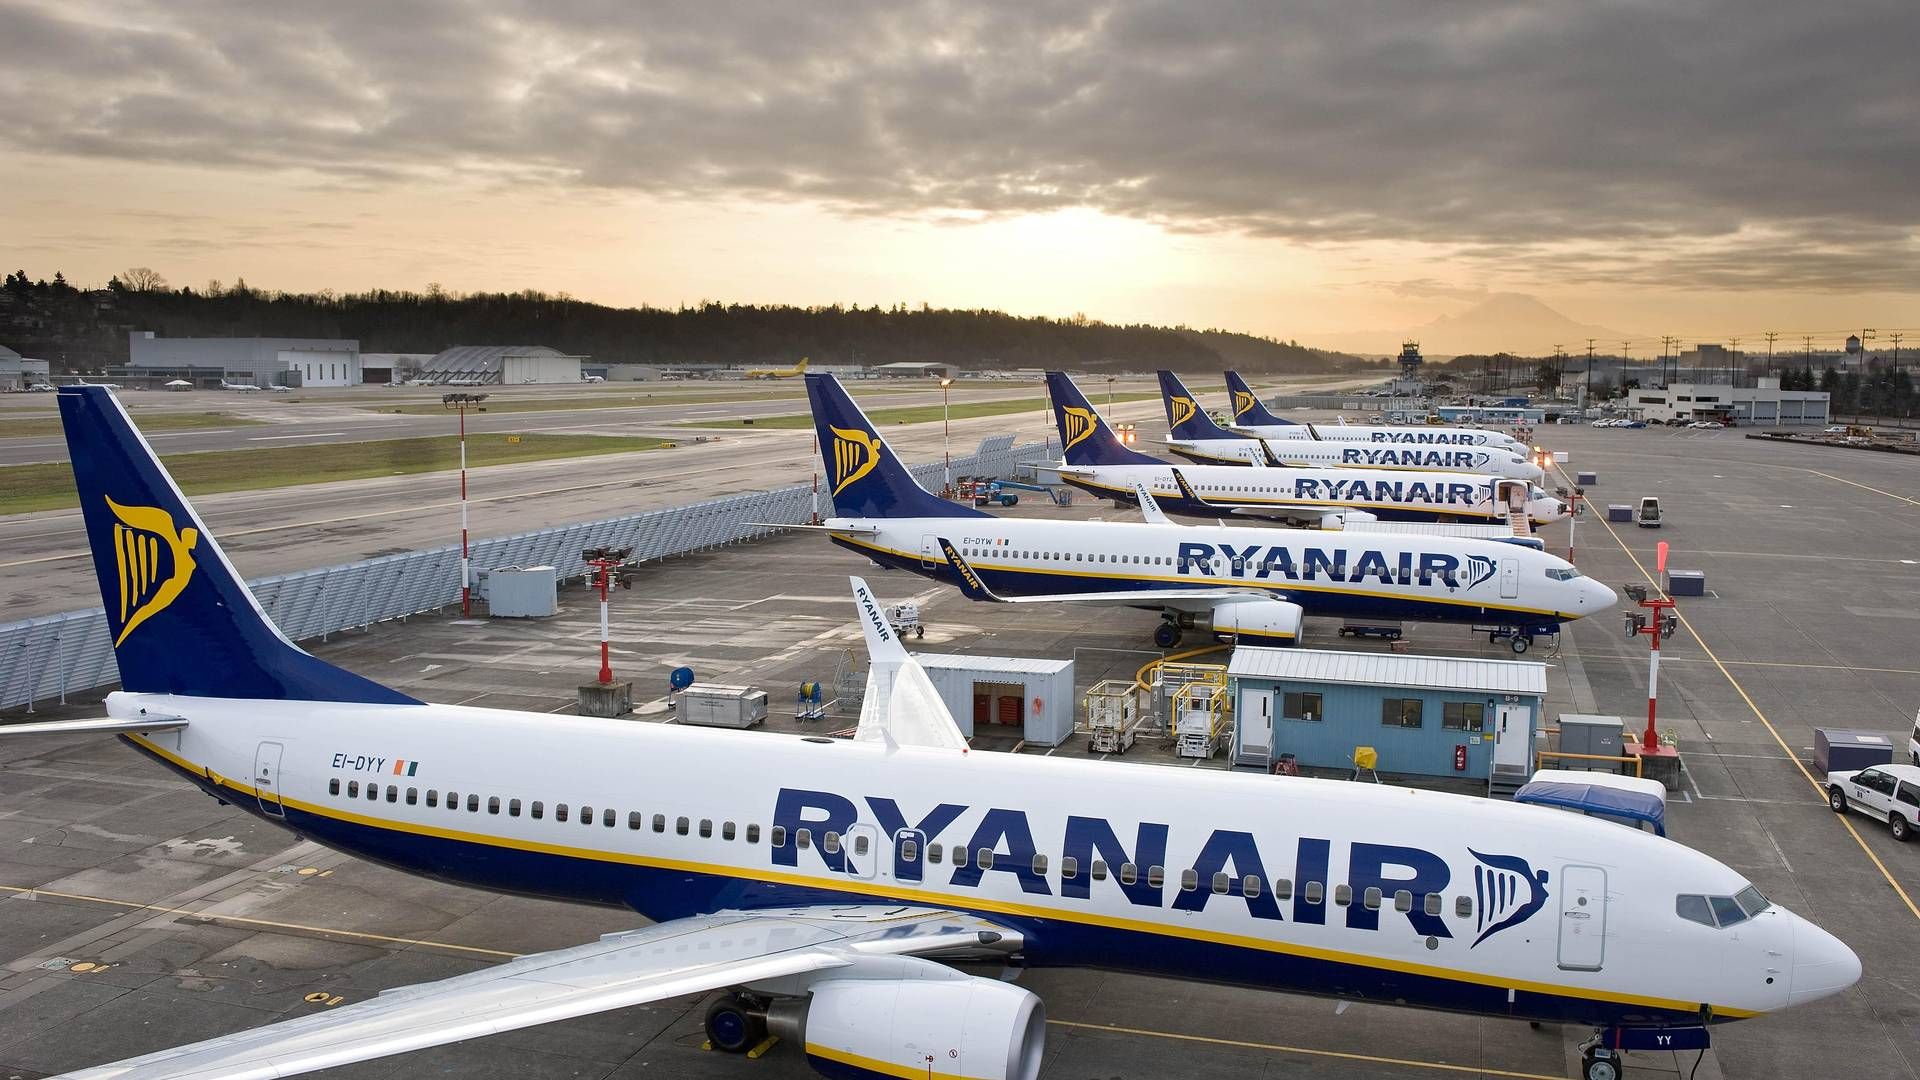 Der er langt til en overenskomstaftale mellem Ryanair og Flyvebranchens Personale Union, FPU. | Foto: Ryan Air